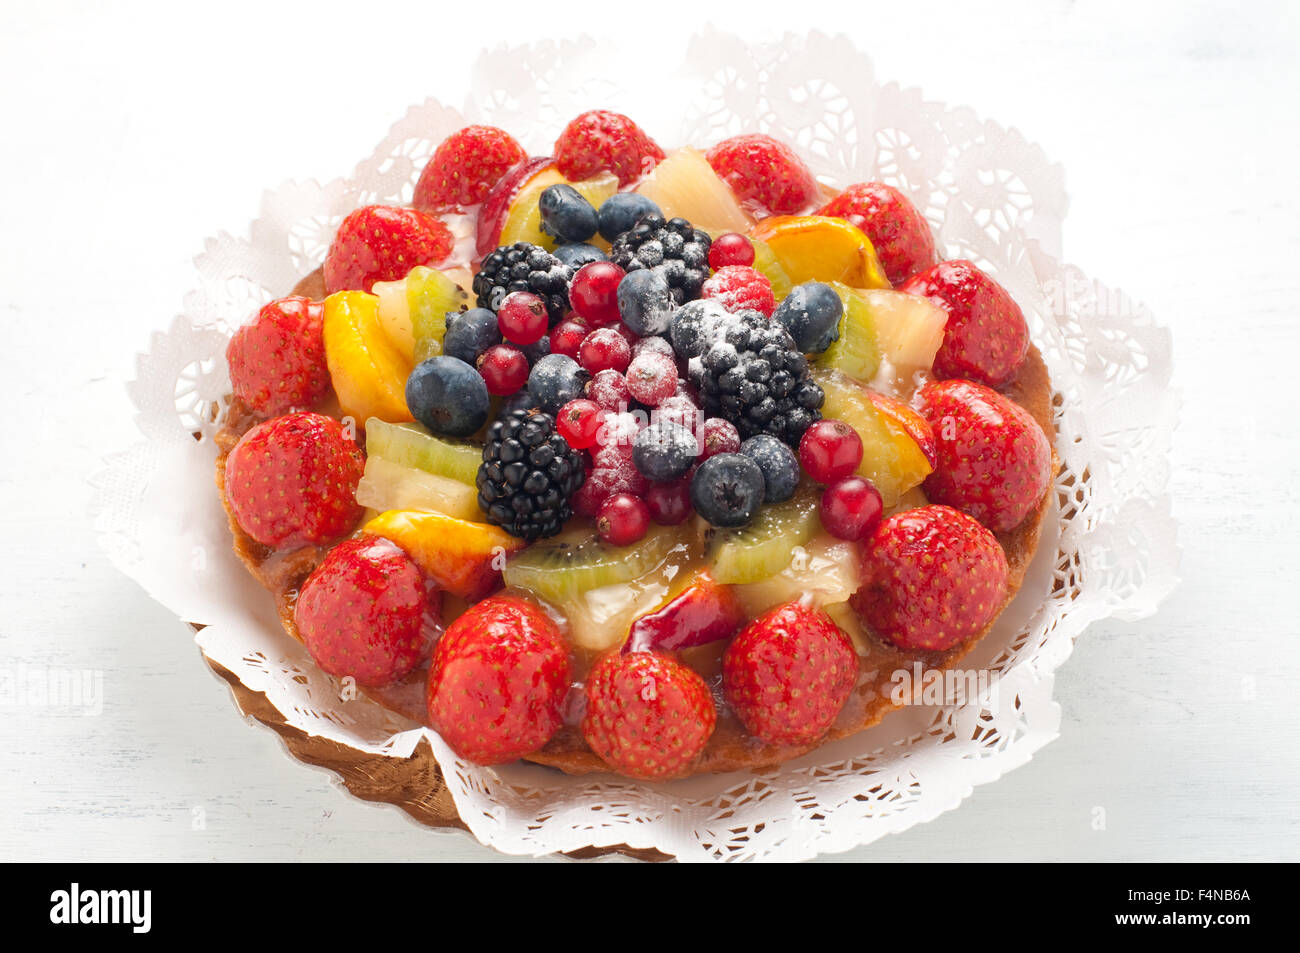 Kuchen mit viel frischem Obst: Erdbeeren, Kiwi, Melone, Beeren, Berry Apfelkuchen frisches Dessert essen frisches Obst Gourmet Gr Stockfoto